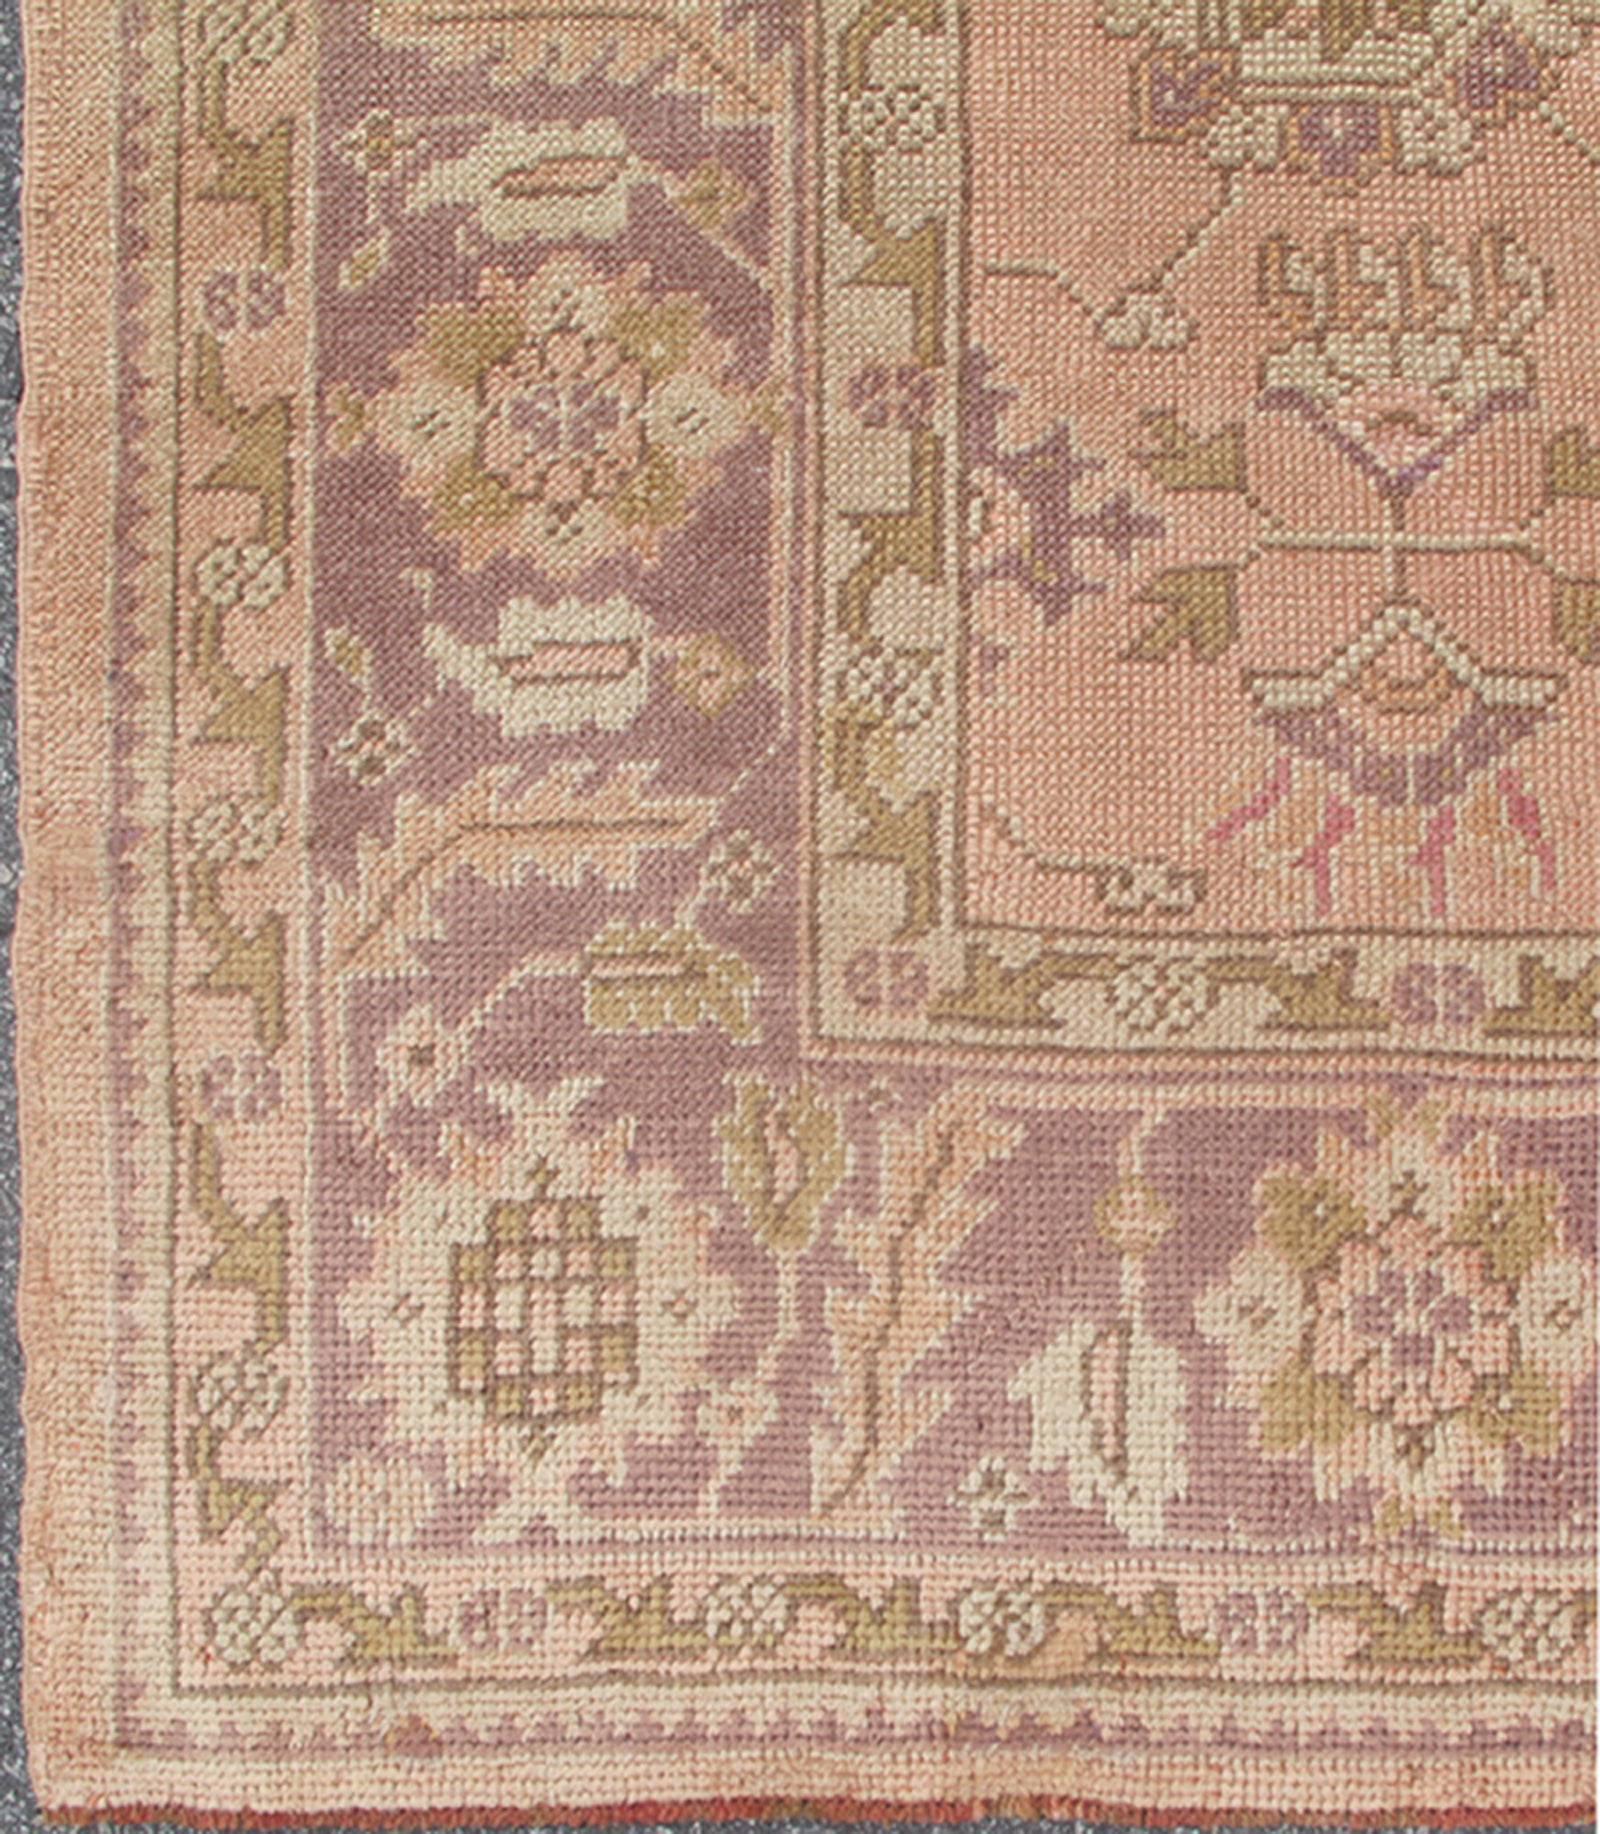 Türkischer Oushak-Teppich mit Paisley-Motiven in Lavendel und Grün  rug/L11-0406  herkunft/ Türkei

Dieser einzigartige türkische Oushak-Teppich zeichnet sich durch ein Allover-Muster aus verschlungenen Paisley-Formen auf einem zentralen Feld in